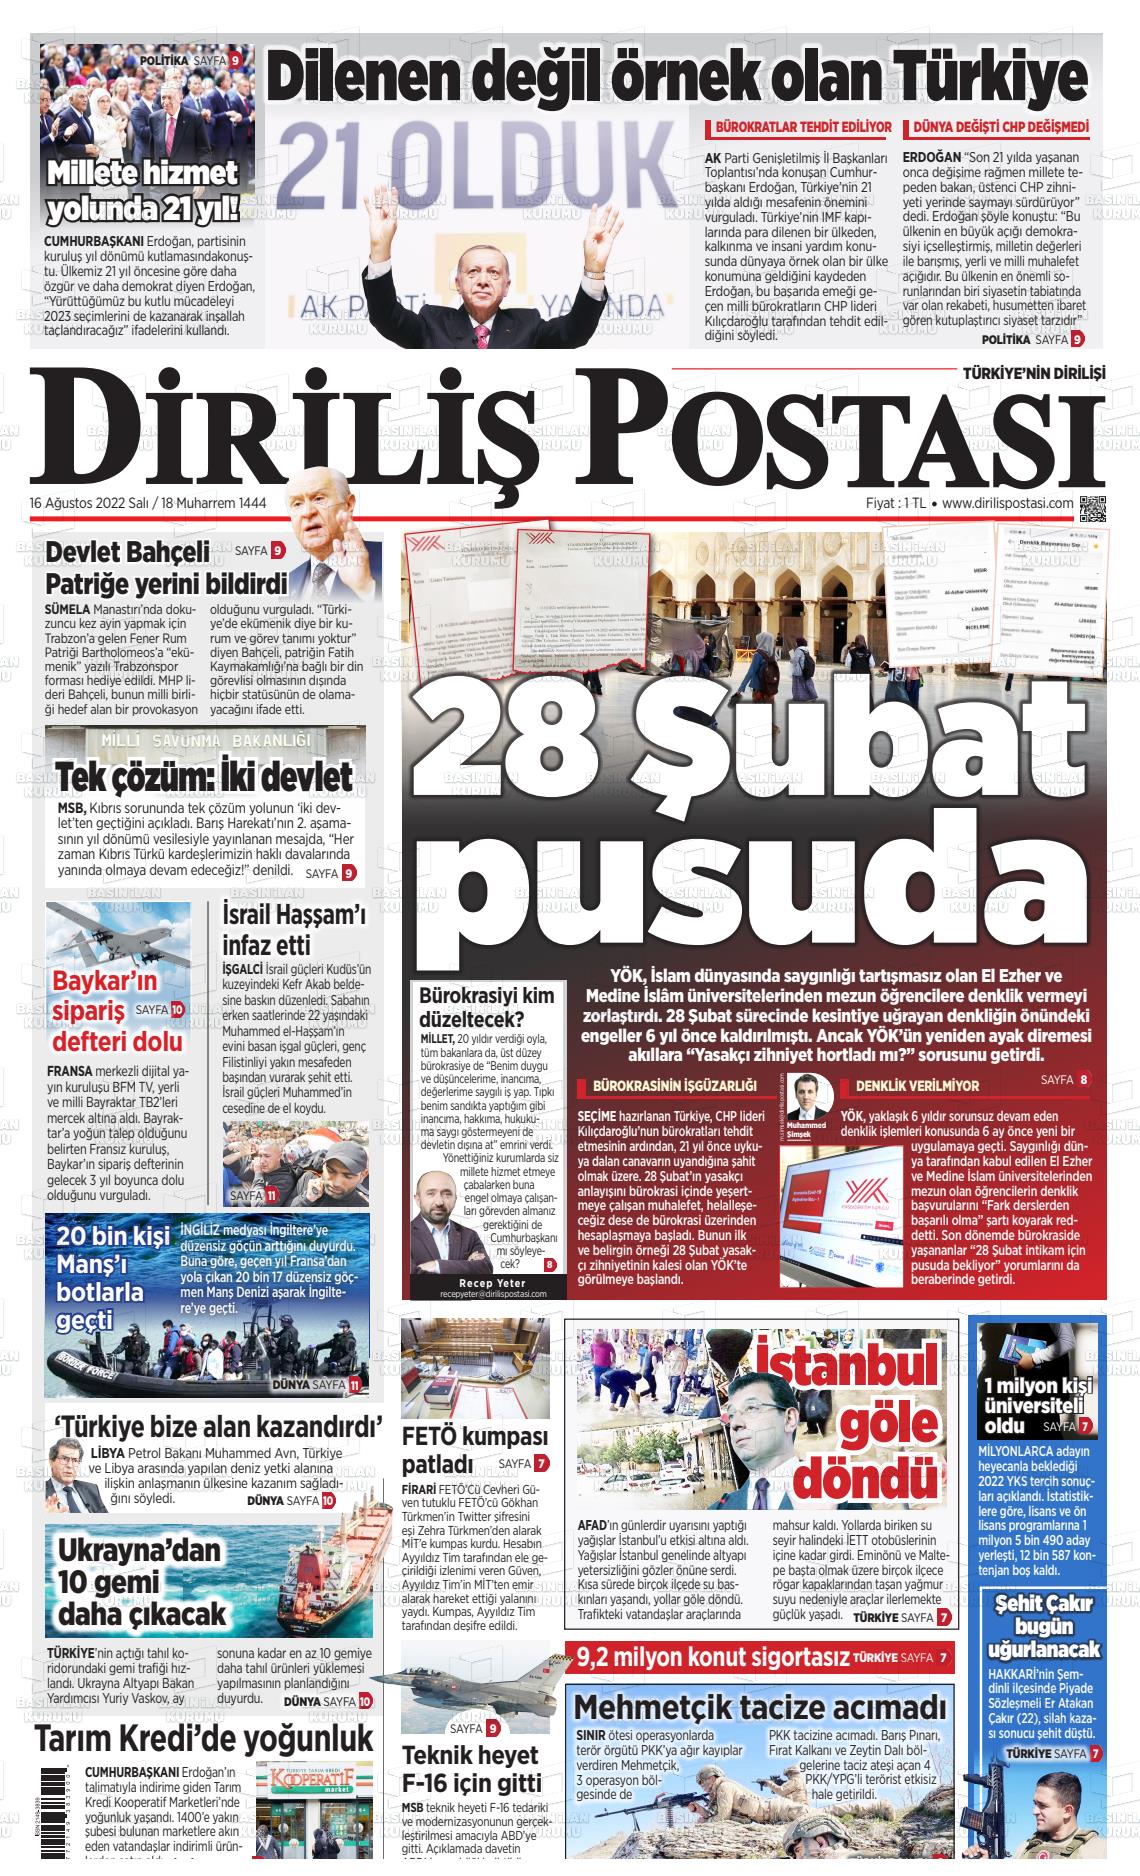 16 Ağustos 2022 Diriliş Postası Gazete Manşeti